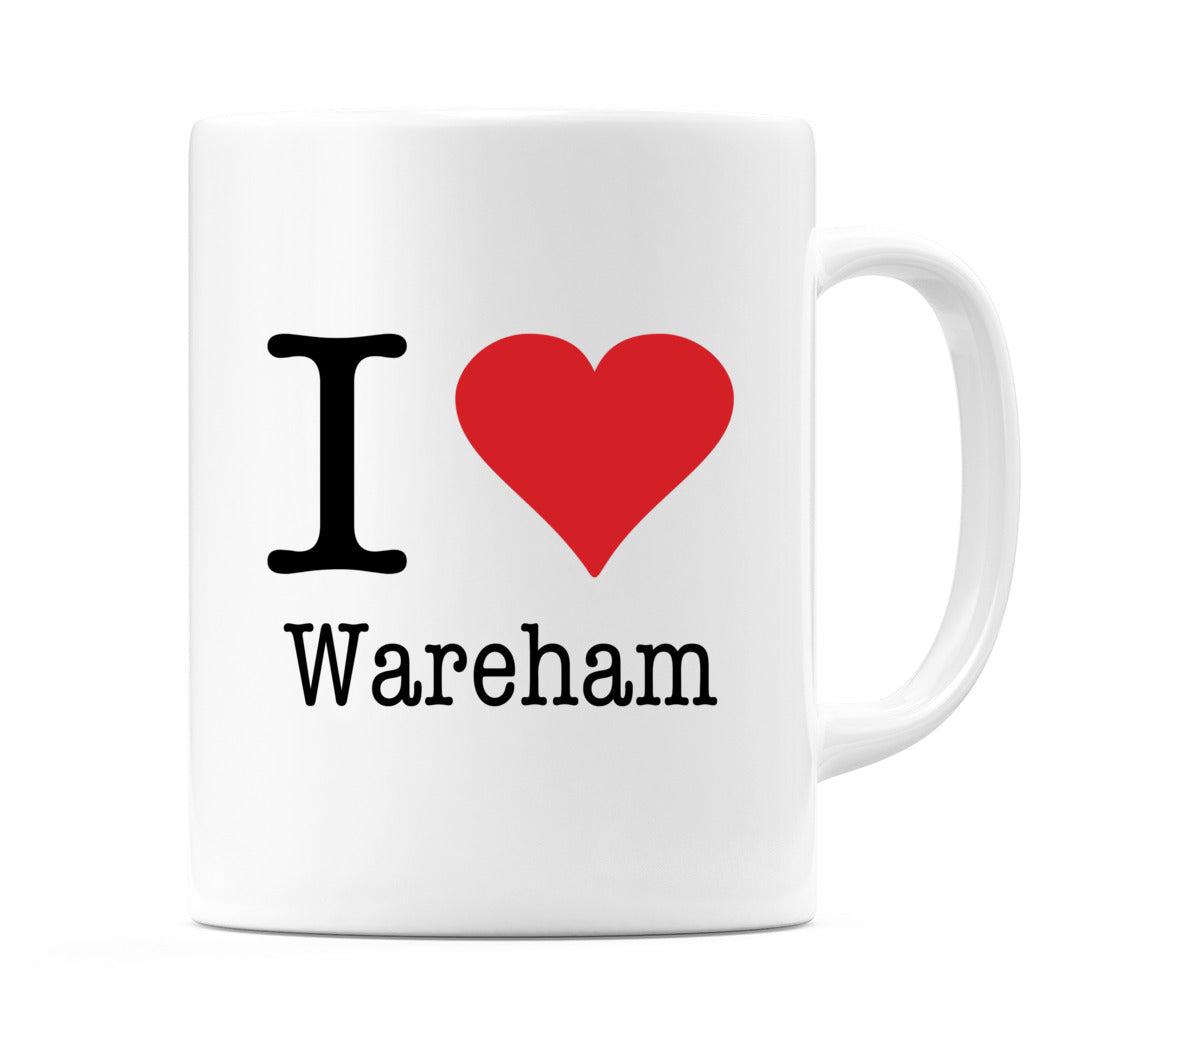 I Love Wareham Mug